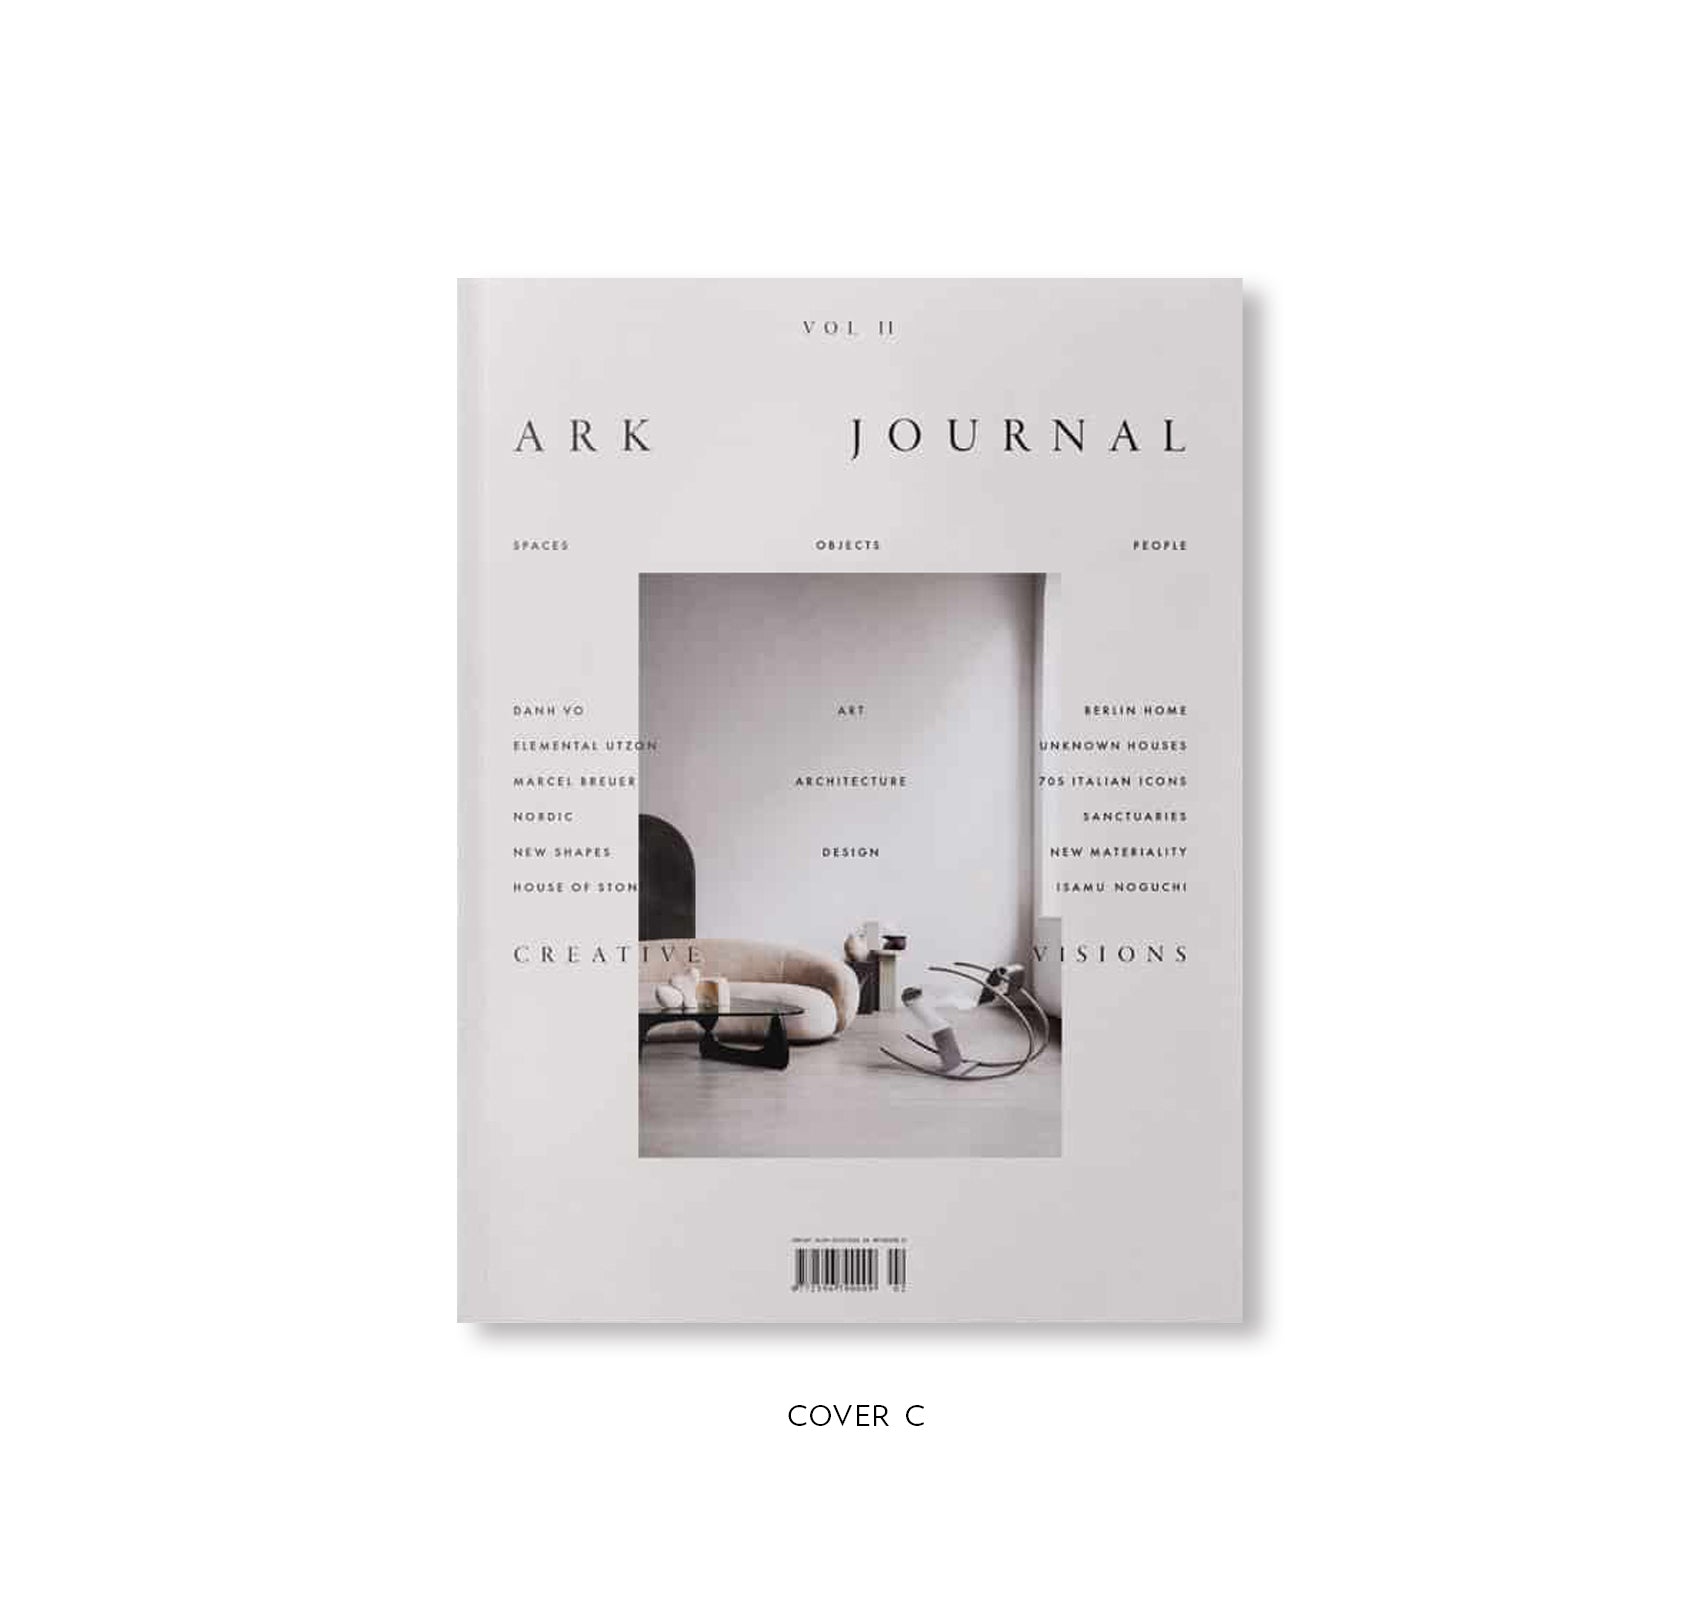 ARK JOURNAL VOLUME II AUTUMN/WINTER 2019